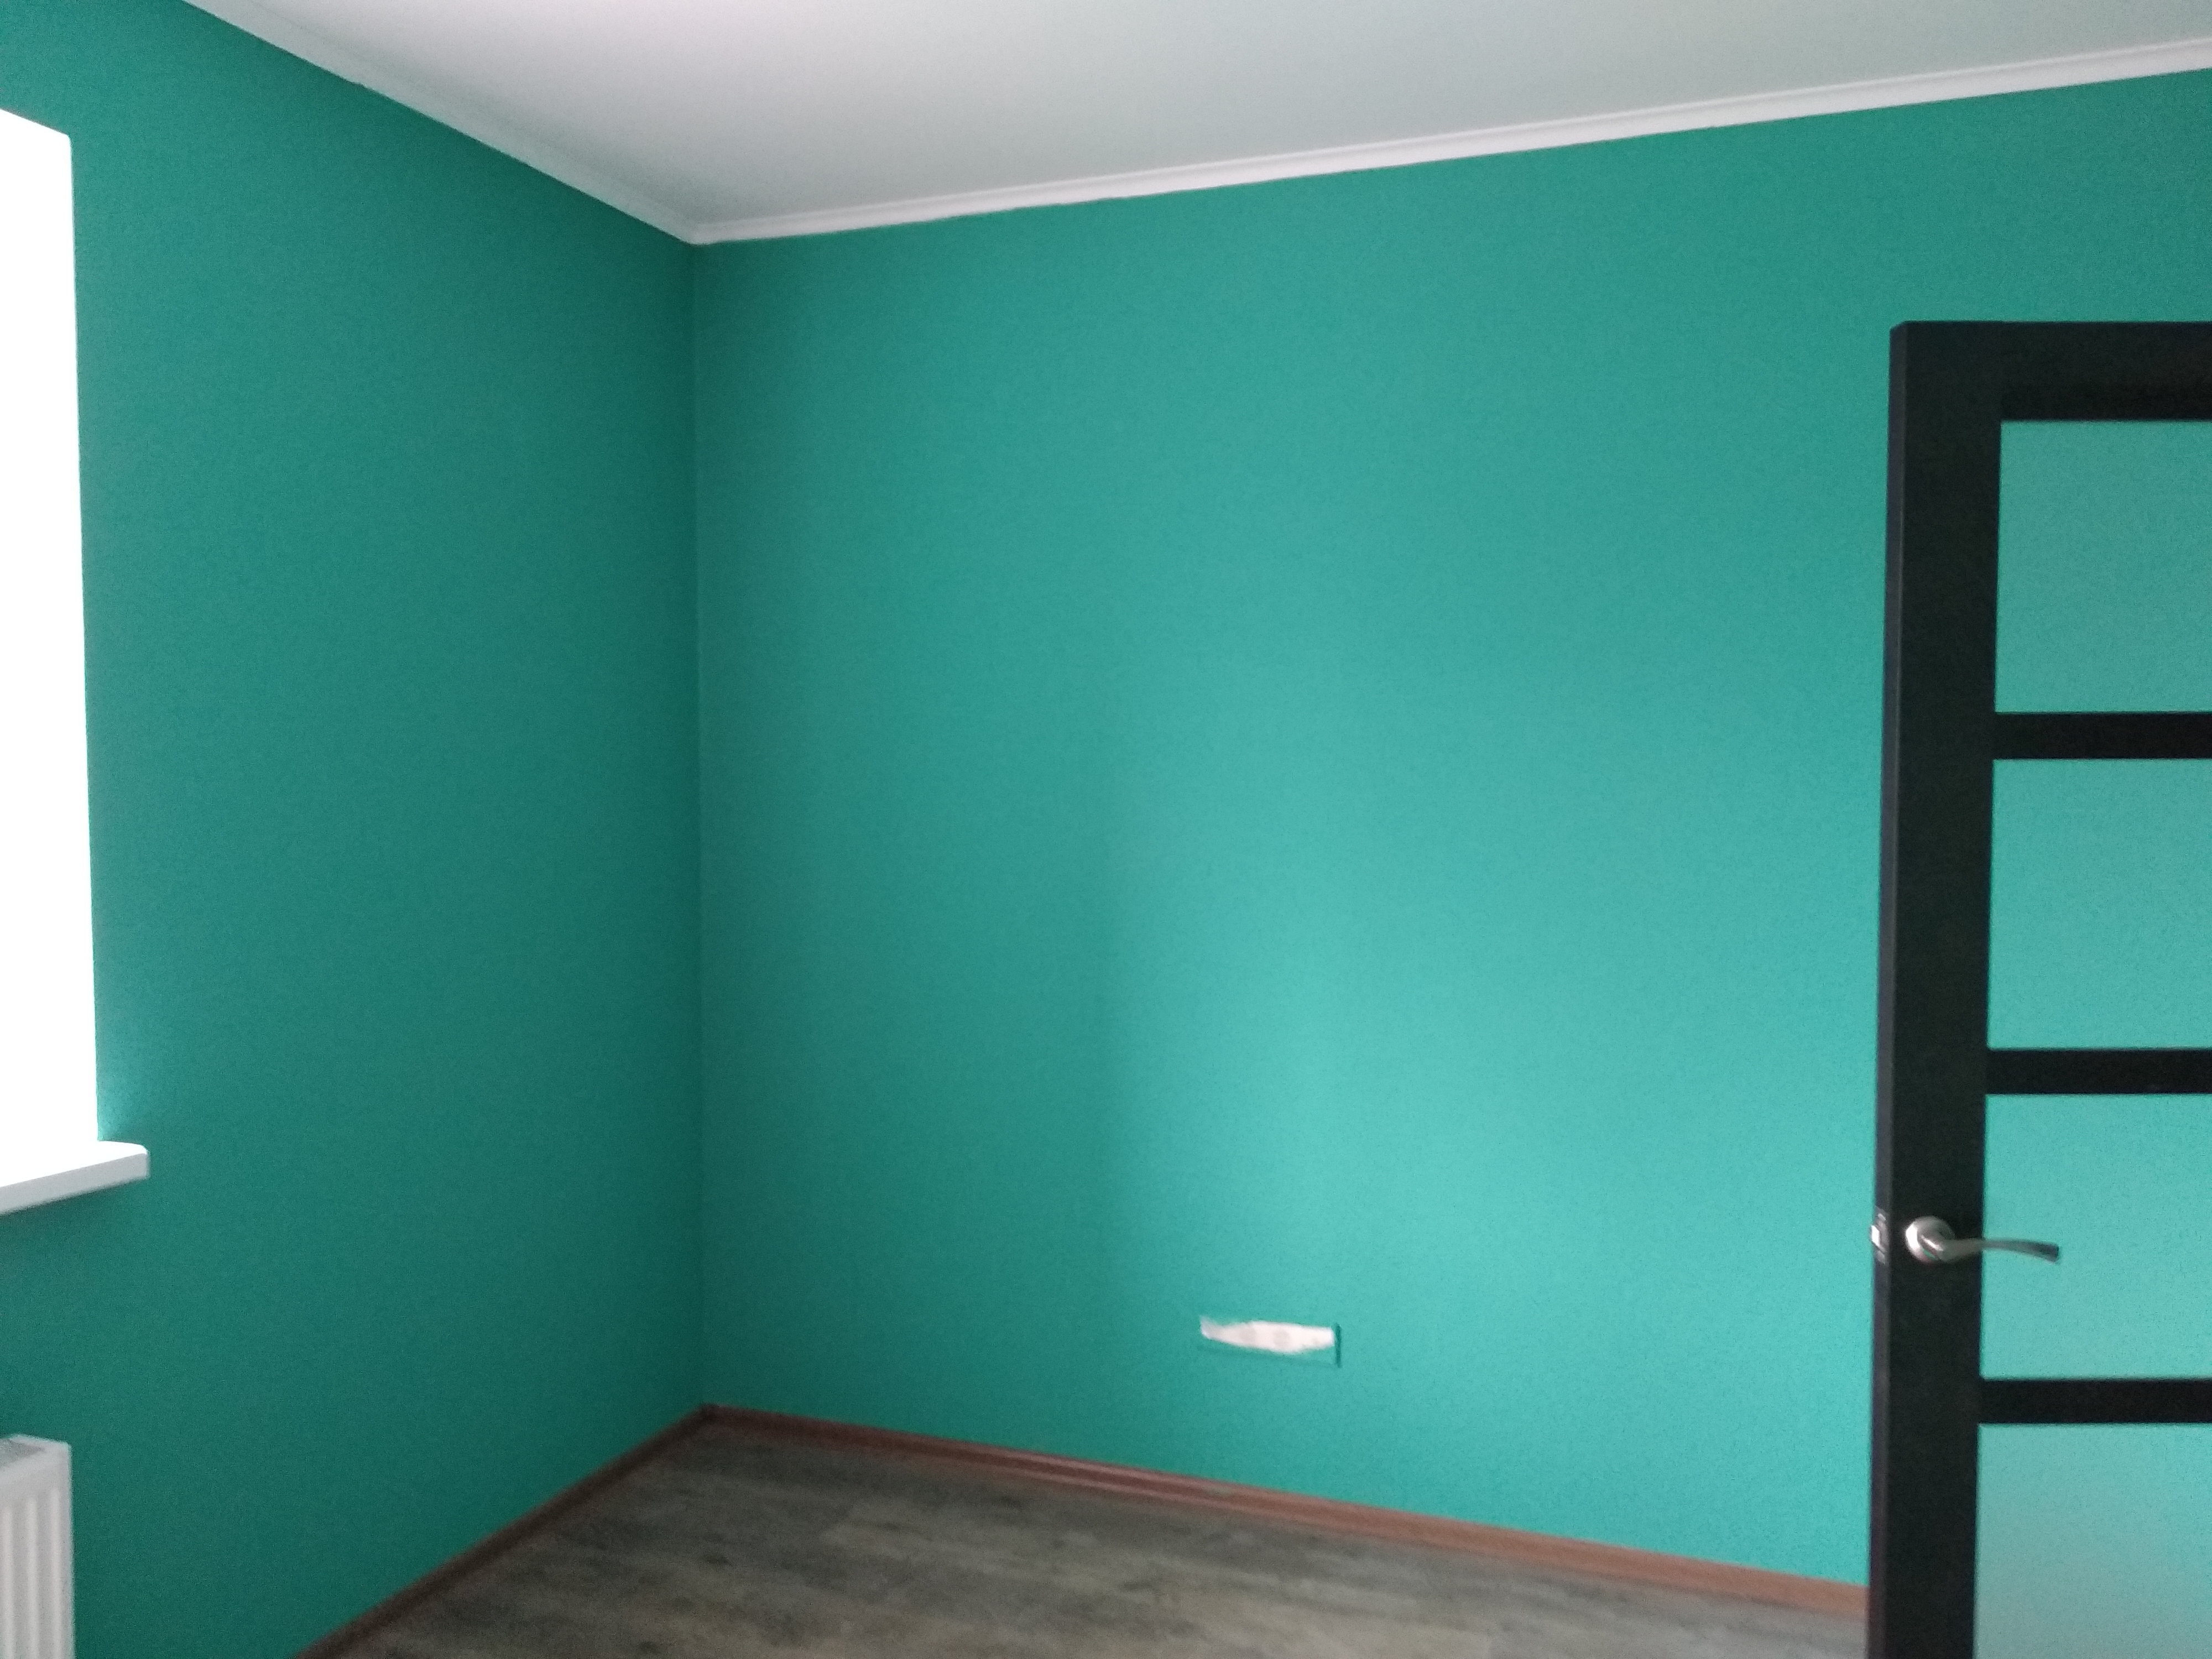 Метр обои покраска. Покрашенные стены. Стены под покраску. Матовая краска для стен. Покрашенные стены в квартире.